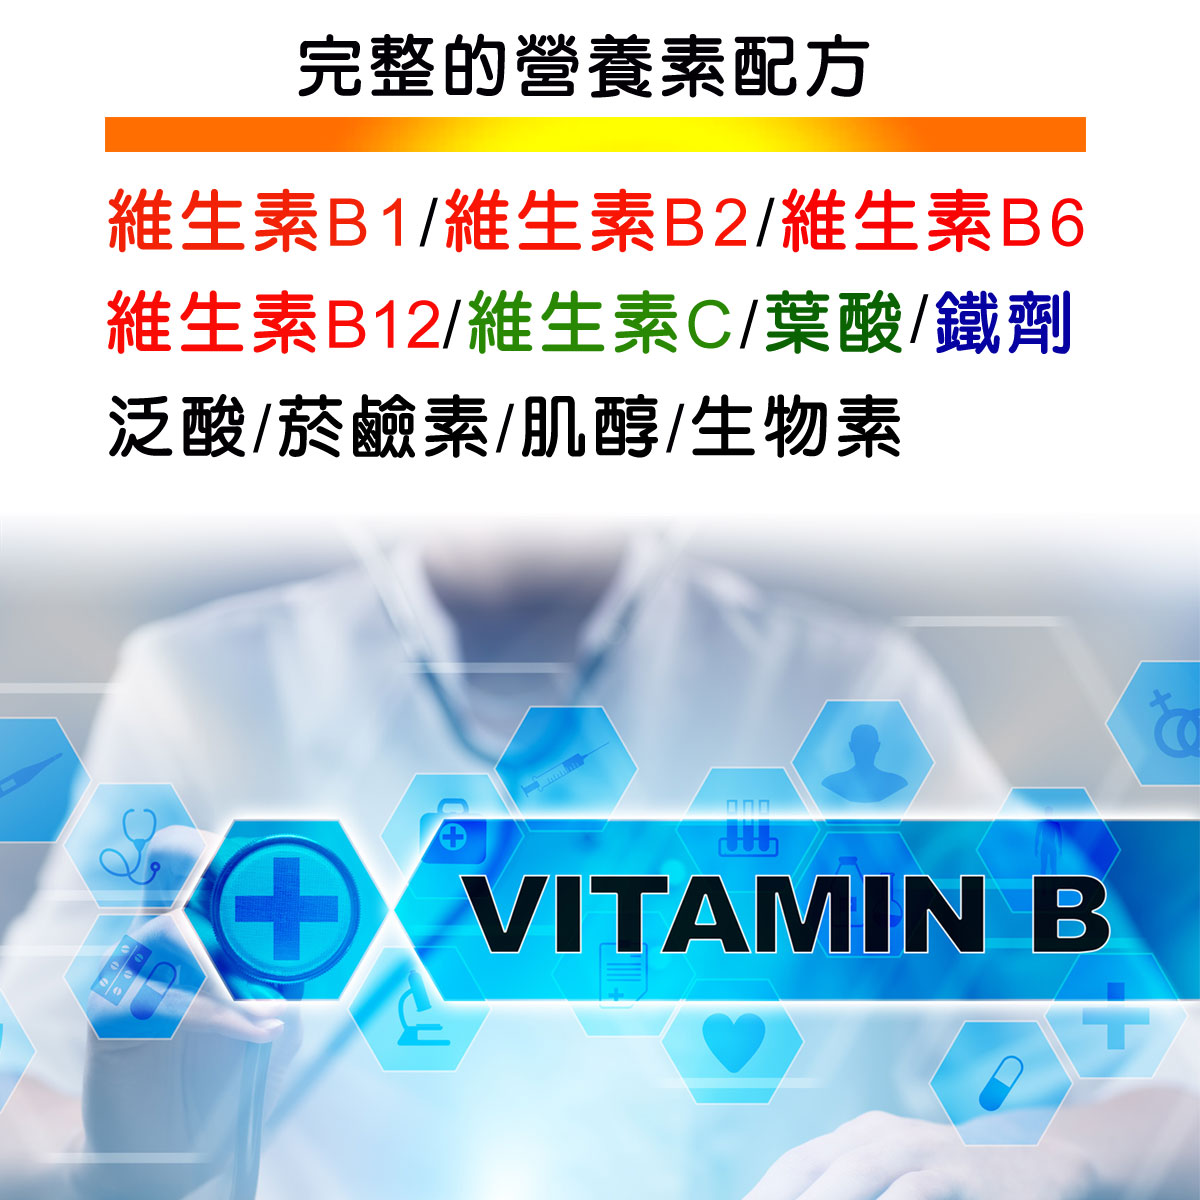 TOP-B永恩錠 美國進口高單位維他命B群加強錠 維生素B12加強配方「IVITAL艾維特」